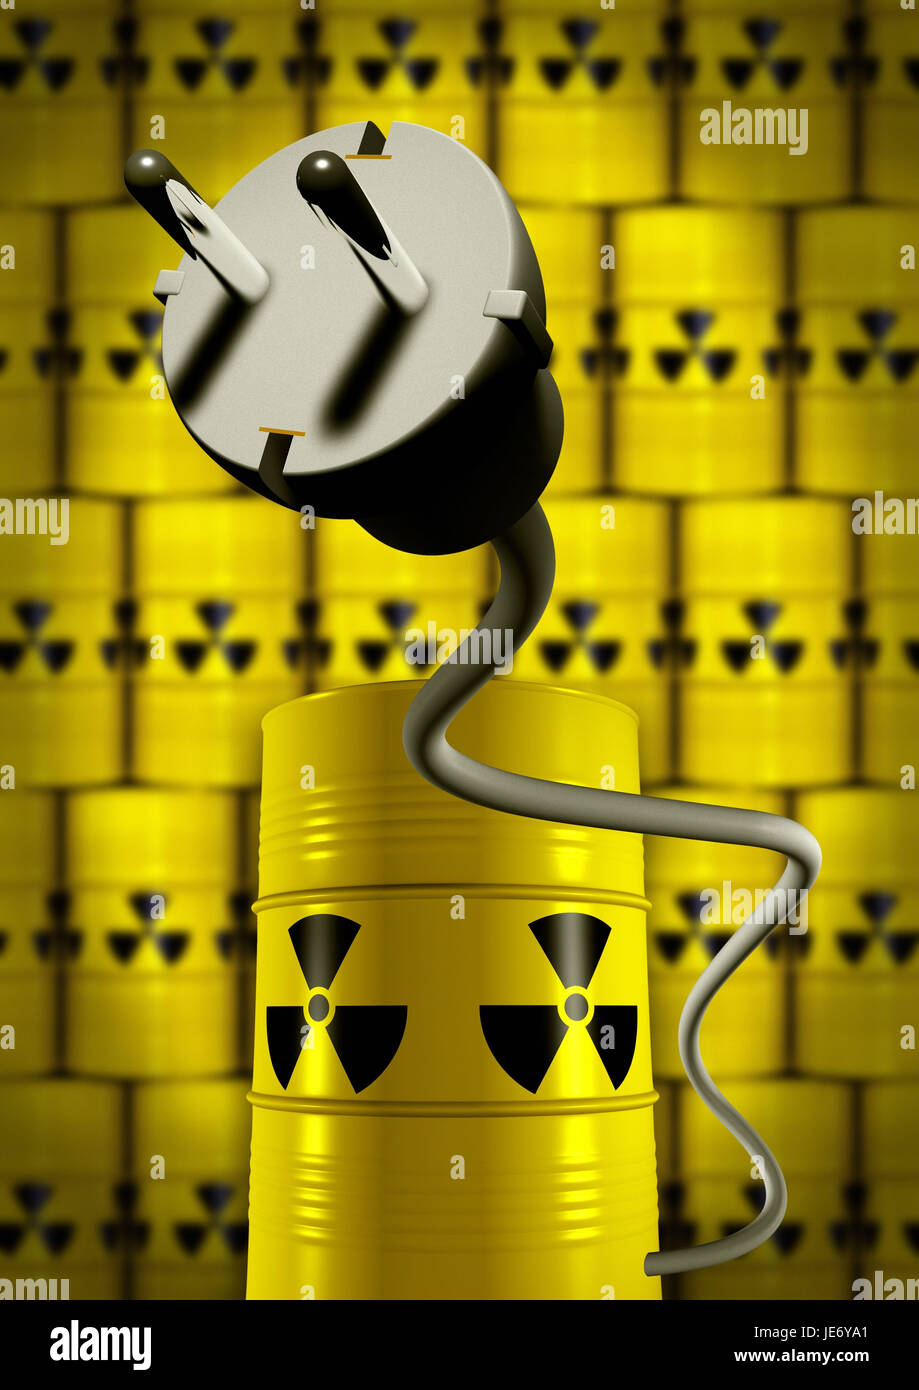 Nuclear energy, nuclear energy, Stock Photo